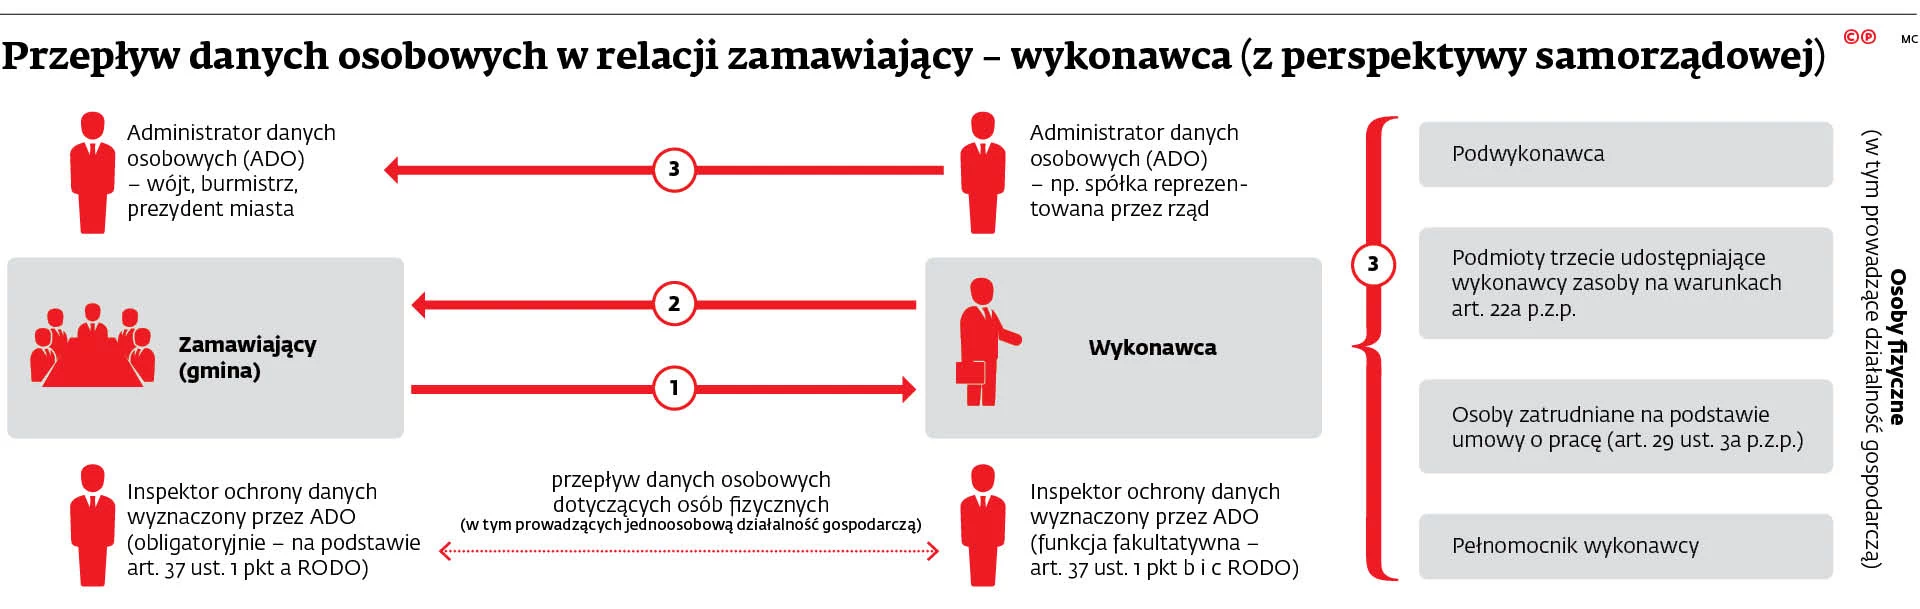 Jak prawidłowo stosować RODO przy zamówieniach publicznych - GazetaPrawna.pl